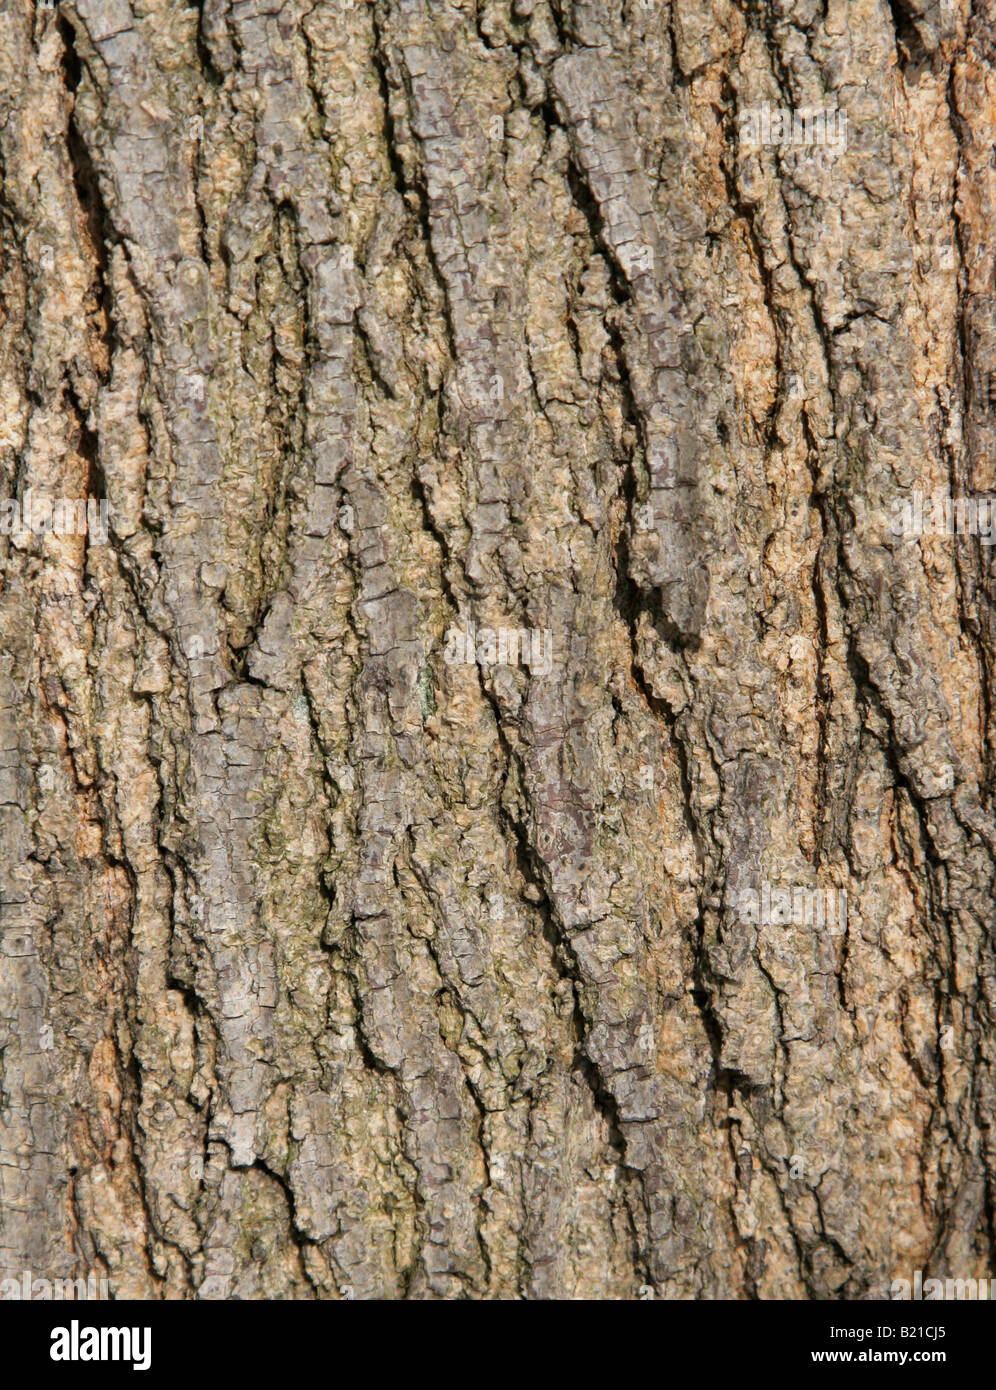 Rough Tree Bark Stock Photo